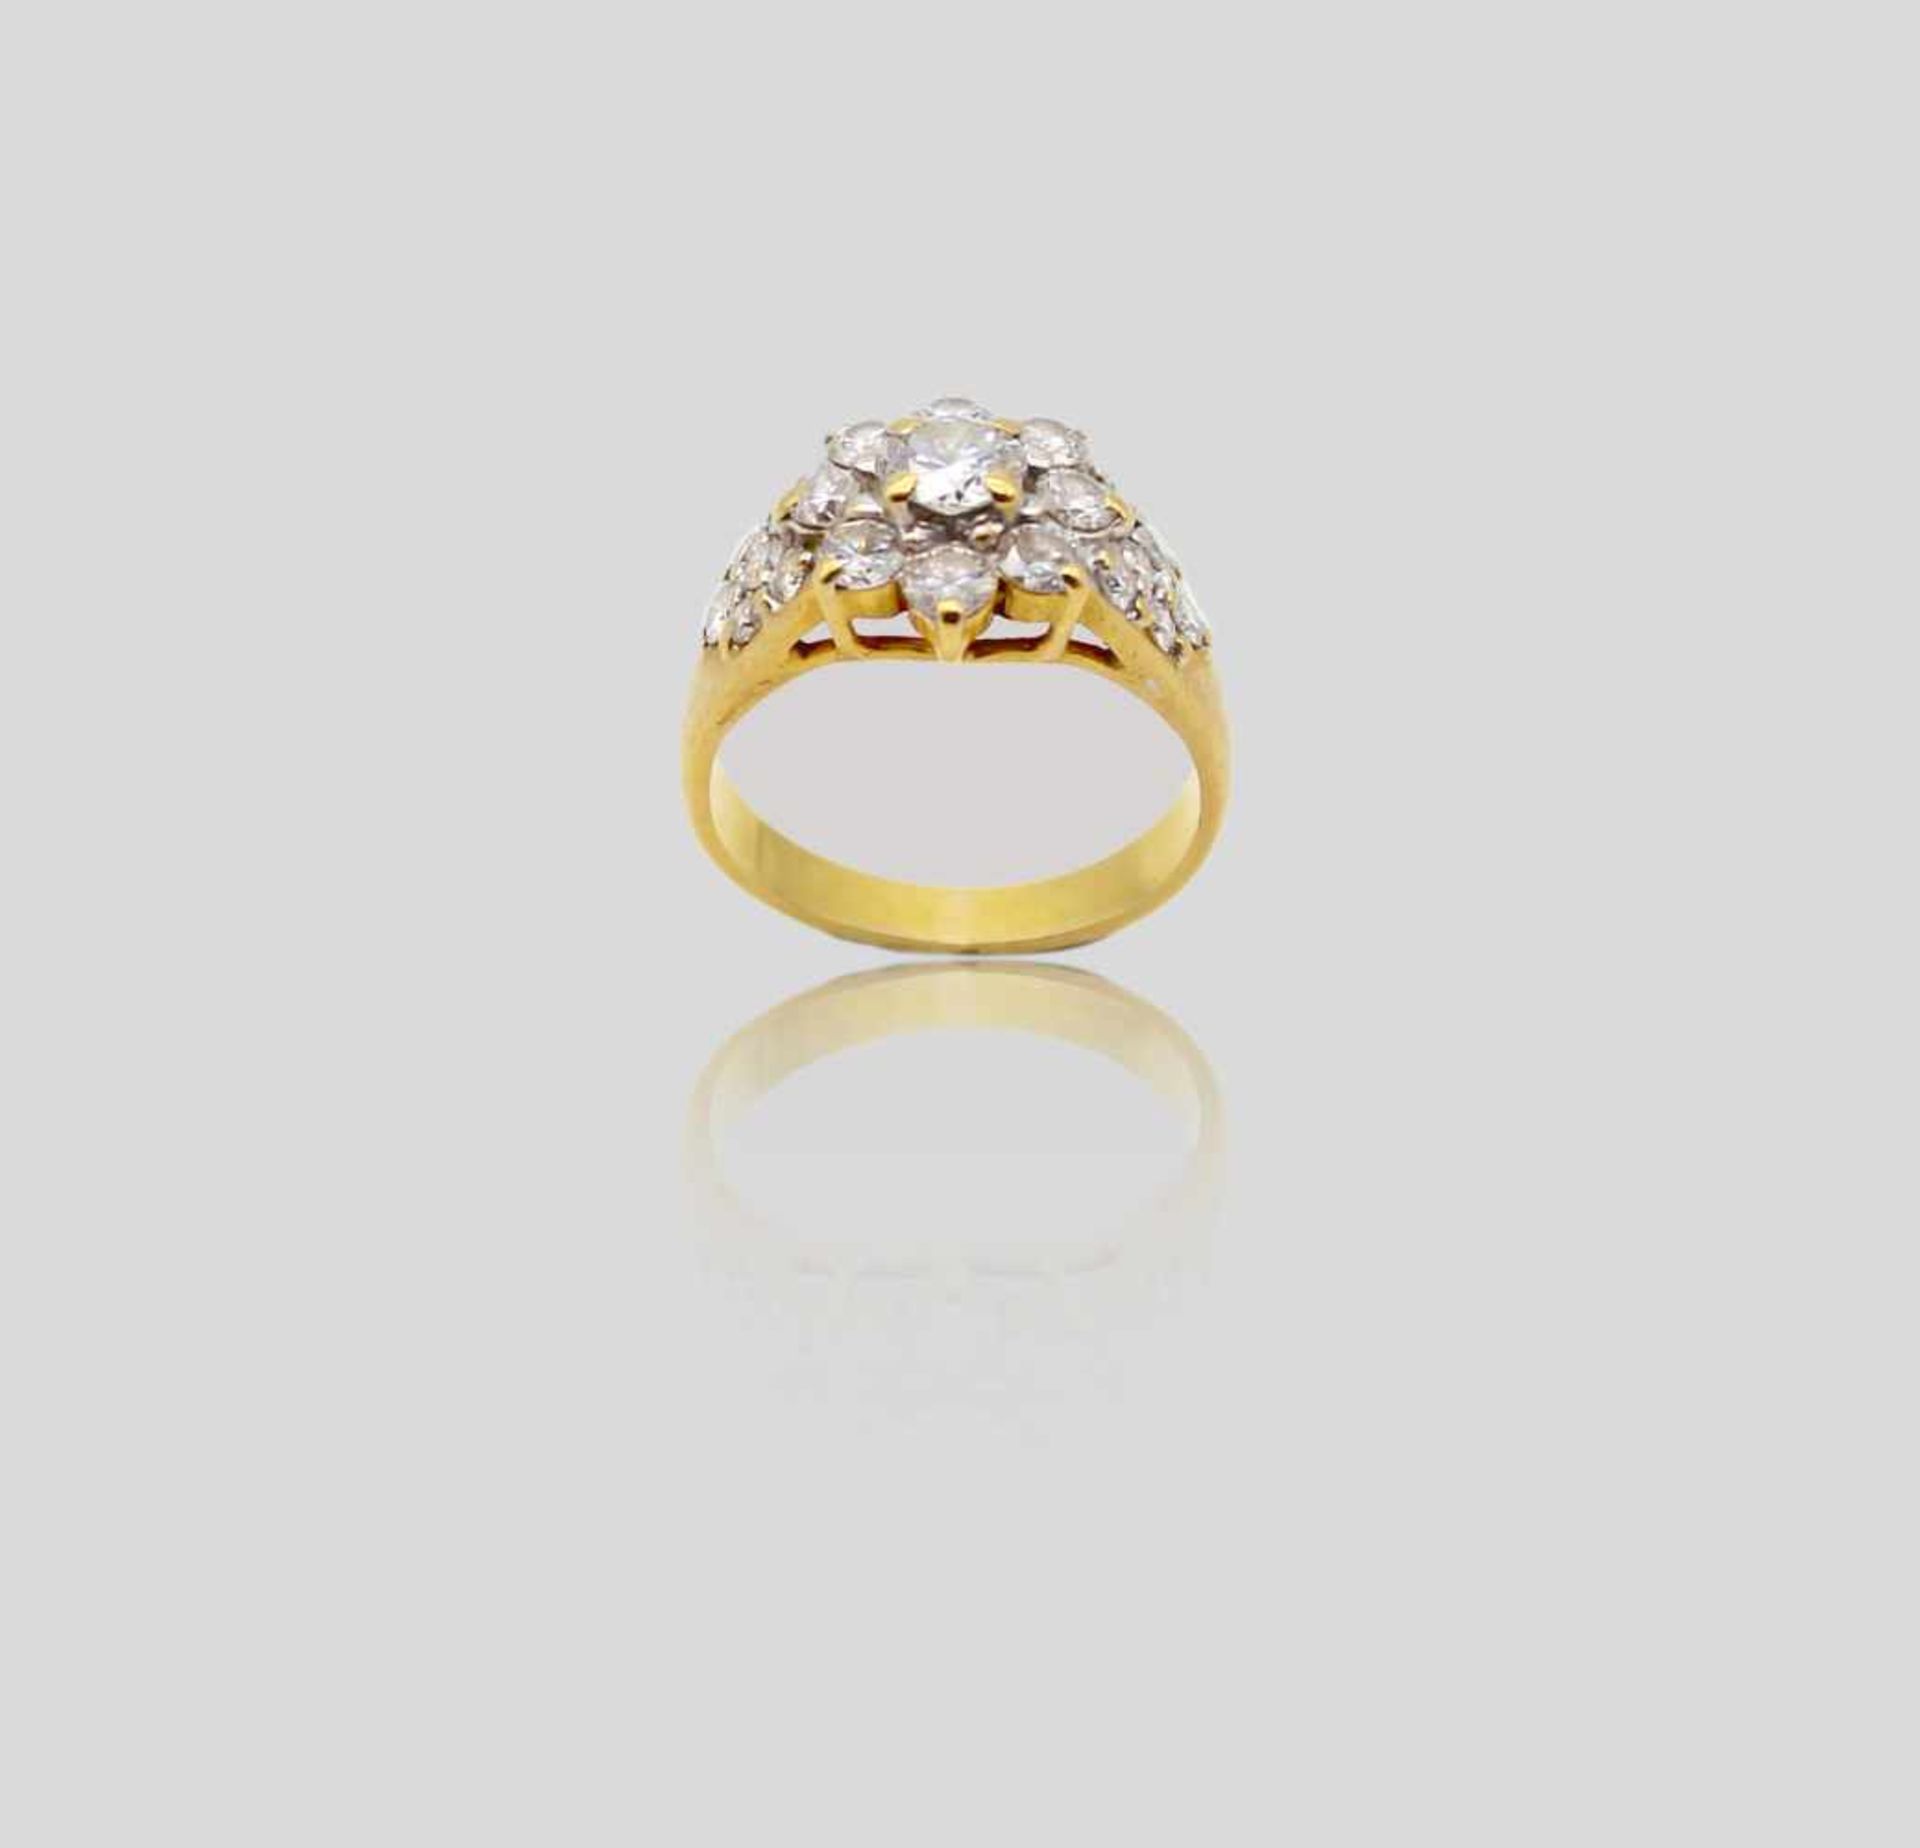 Ring in ca. 916er Gold gearbeitet mit einem Brillanten, ca. 0,40 ct, Qualität: VVS2 - VS1, Farbe G -